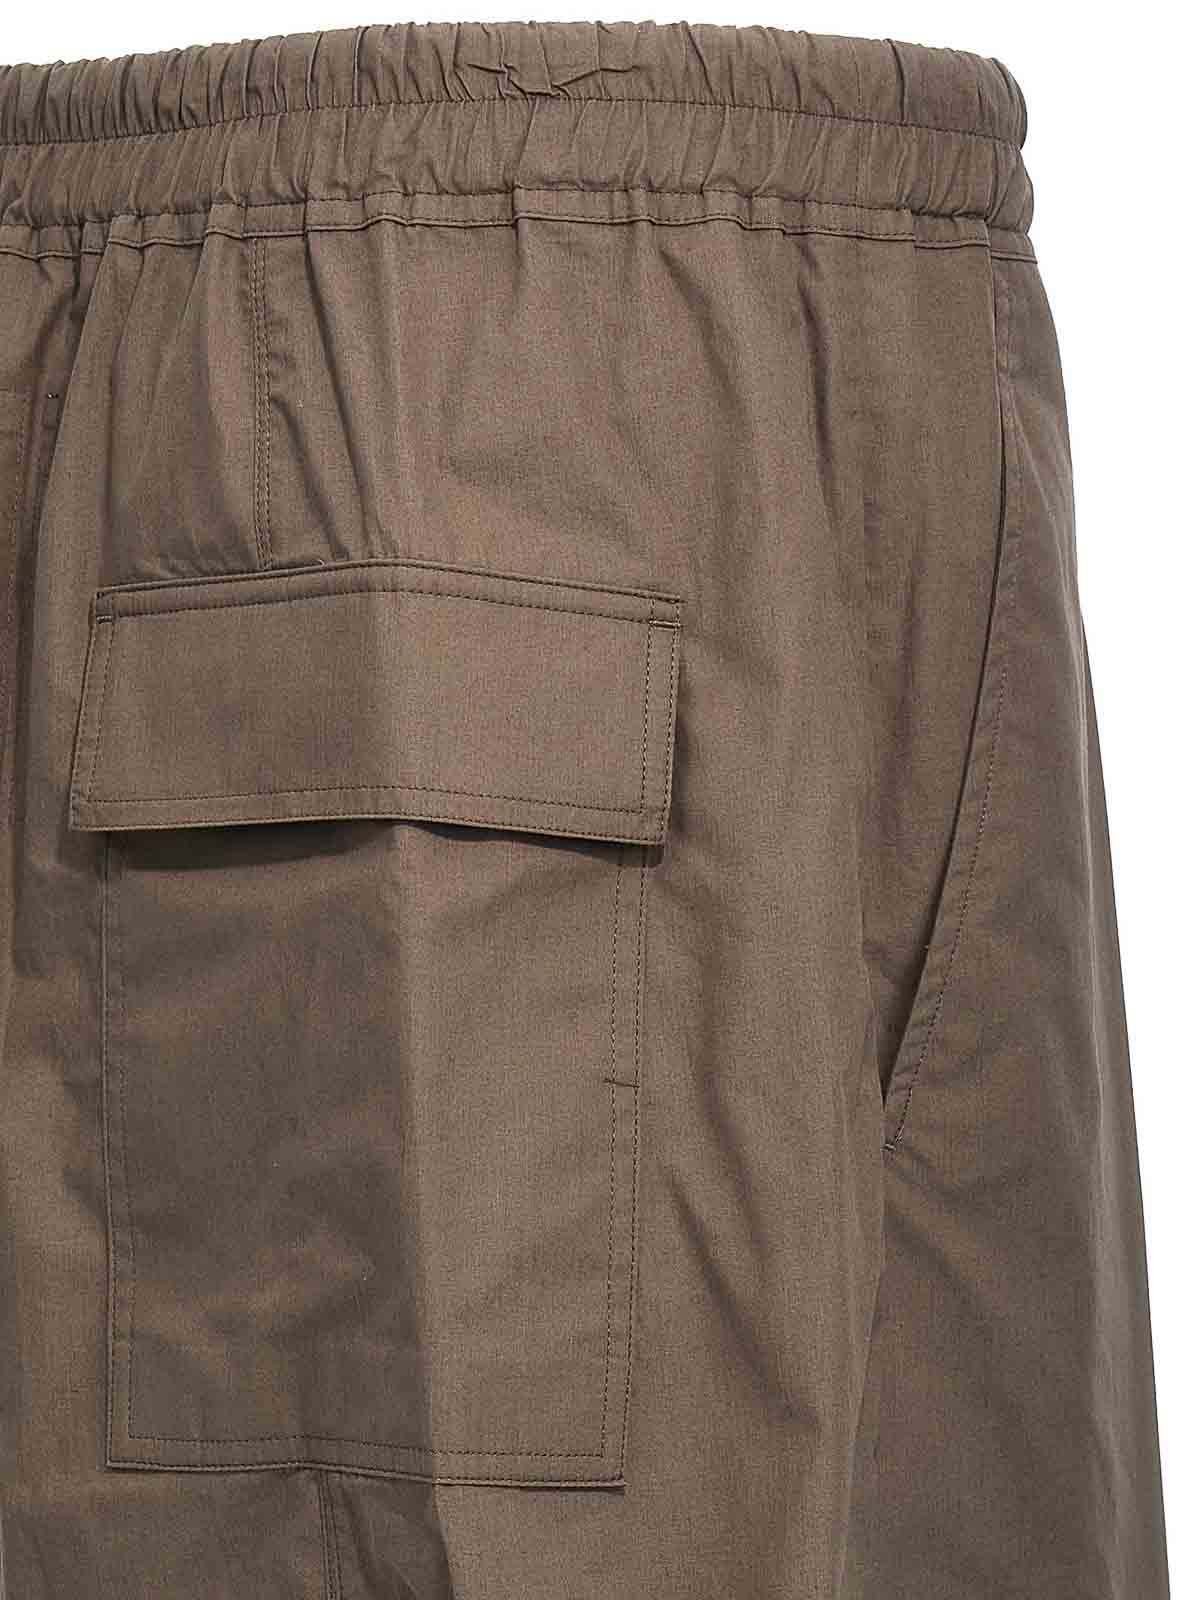 Shop Rick Owens Pantalón Casual - Gris In Grey